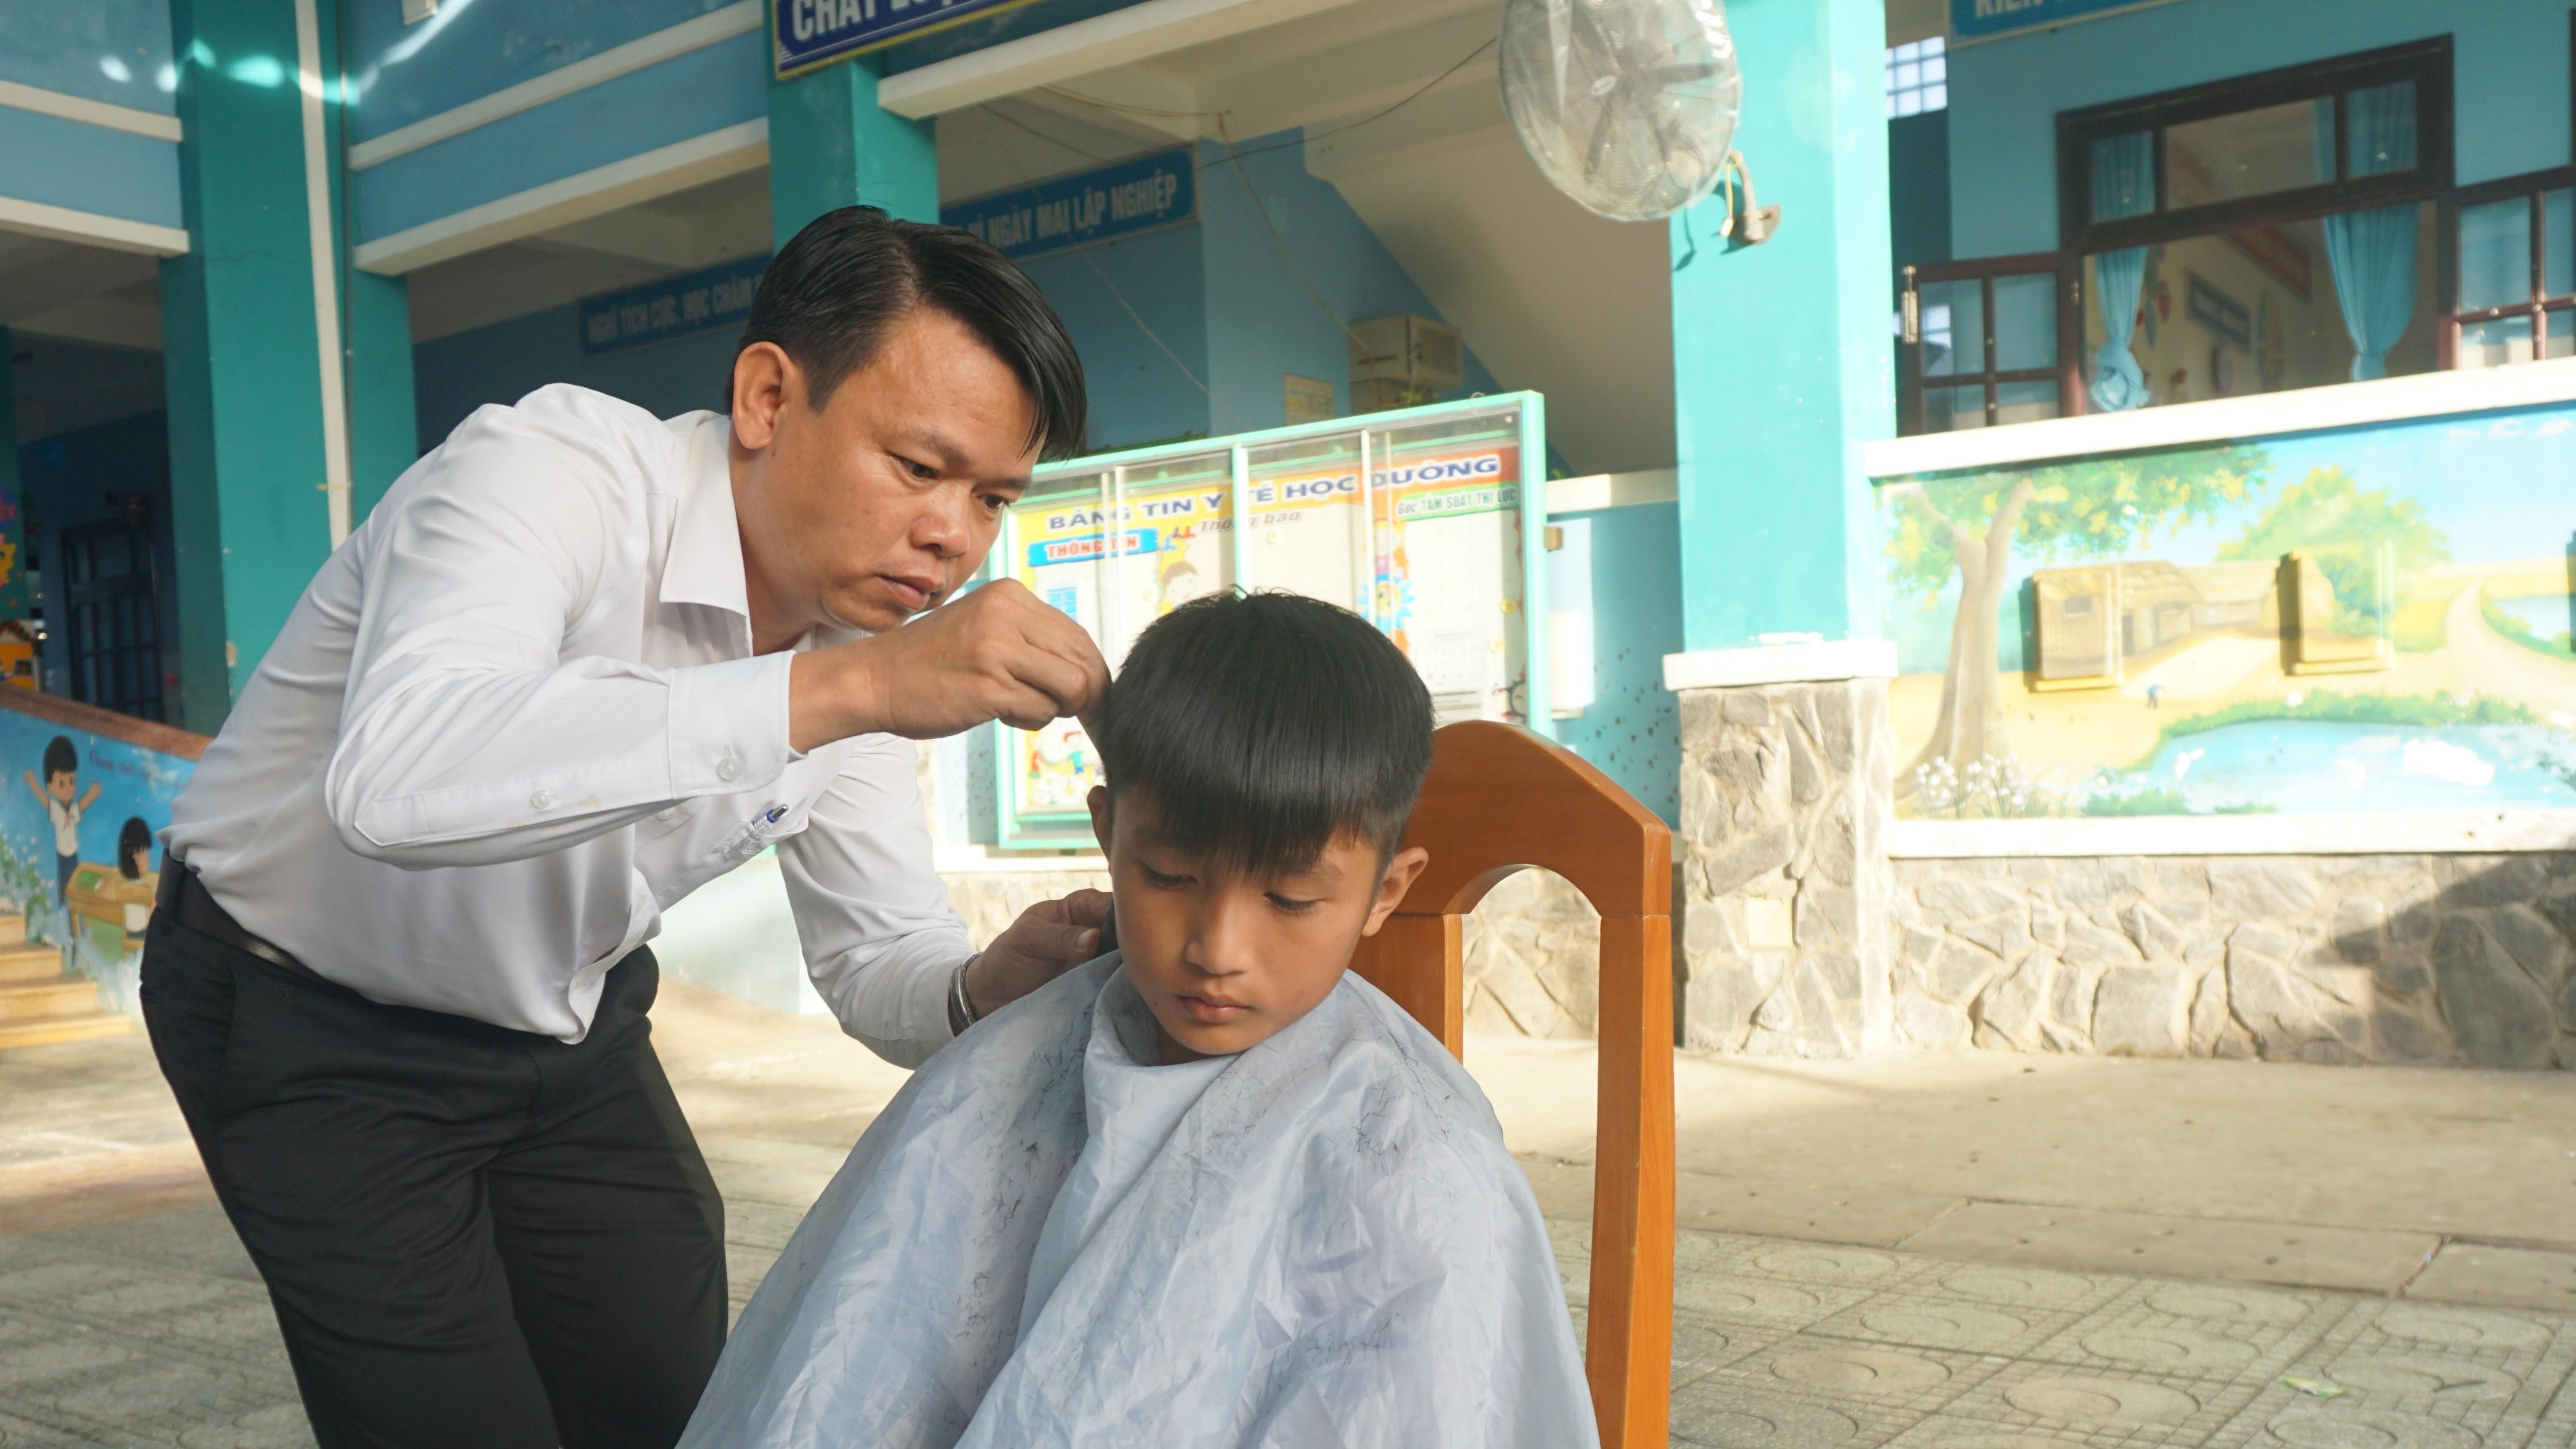 Tiệm hớt tóc thầy hiệu trưởng ở Thạnh An đang nhận được sự quan tâm của cộng đồng vì chất lượng dịch vụ tuyệt vời của mình. Hãy xem video để khám phá lý do tại sao những người dân địa phương luôn thực hiện việc cắt tóc tại đây!